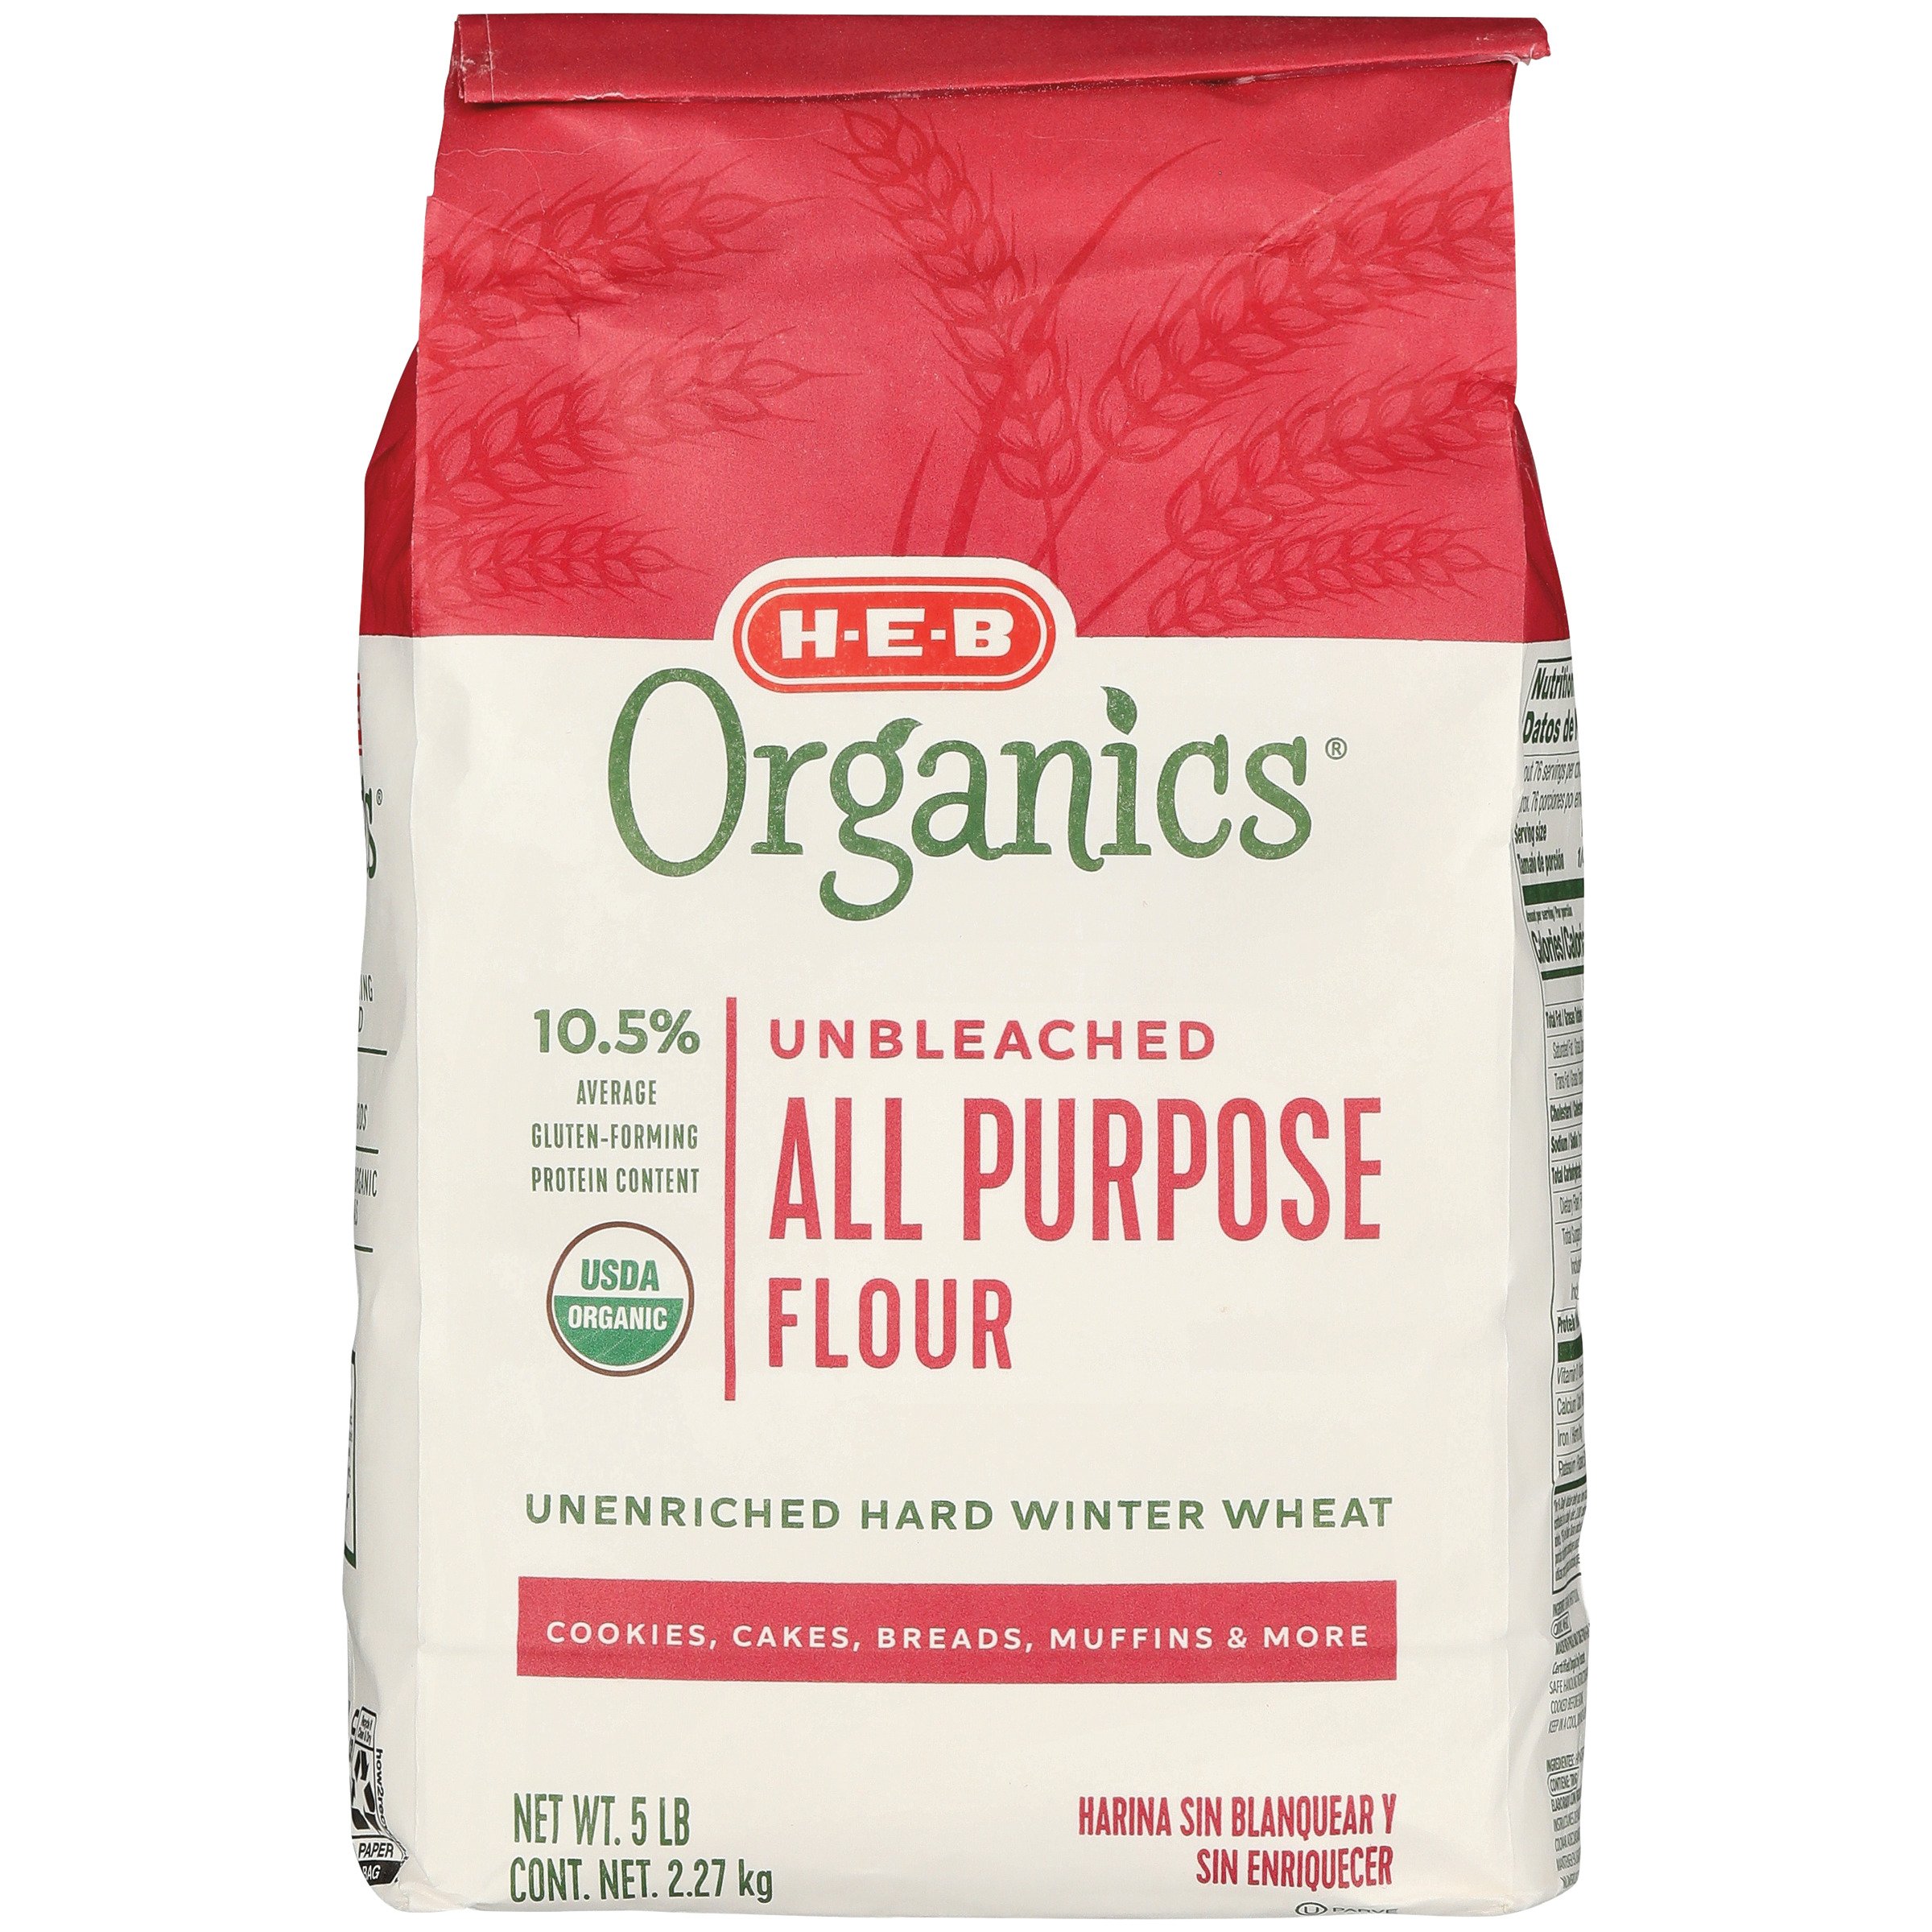 King Arthur All-Purpose Flour, Organic, Unbleached - 5 lbs (2.27 kg)